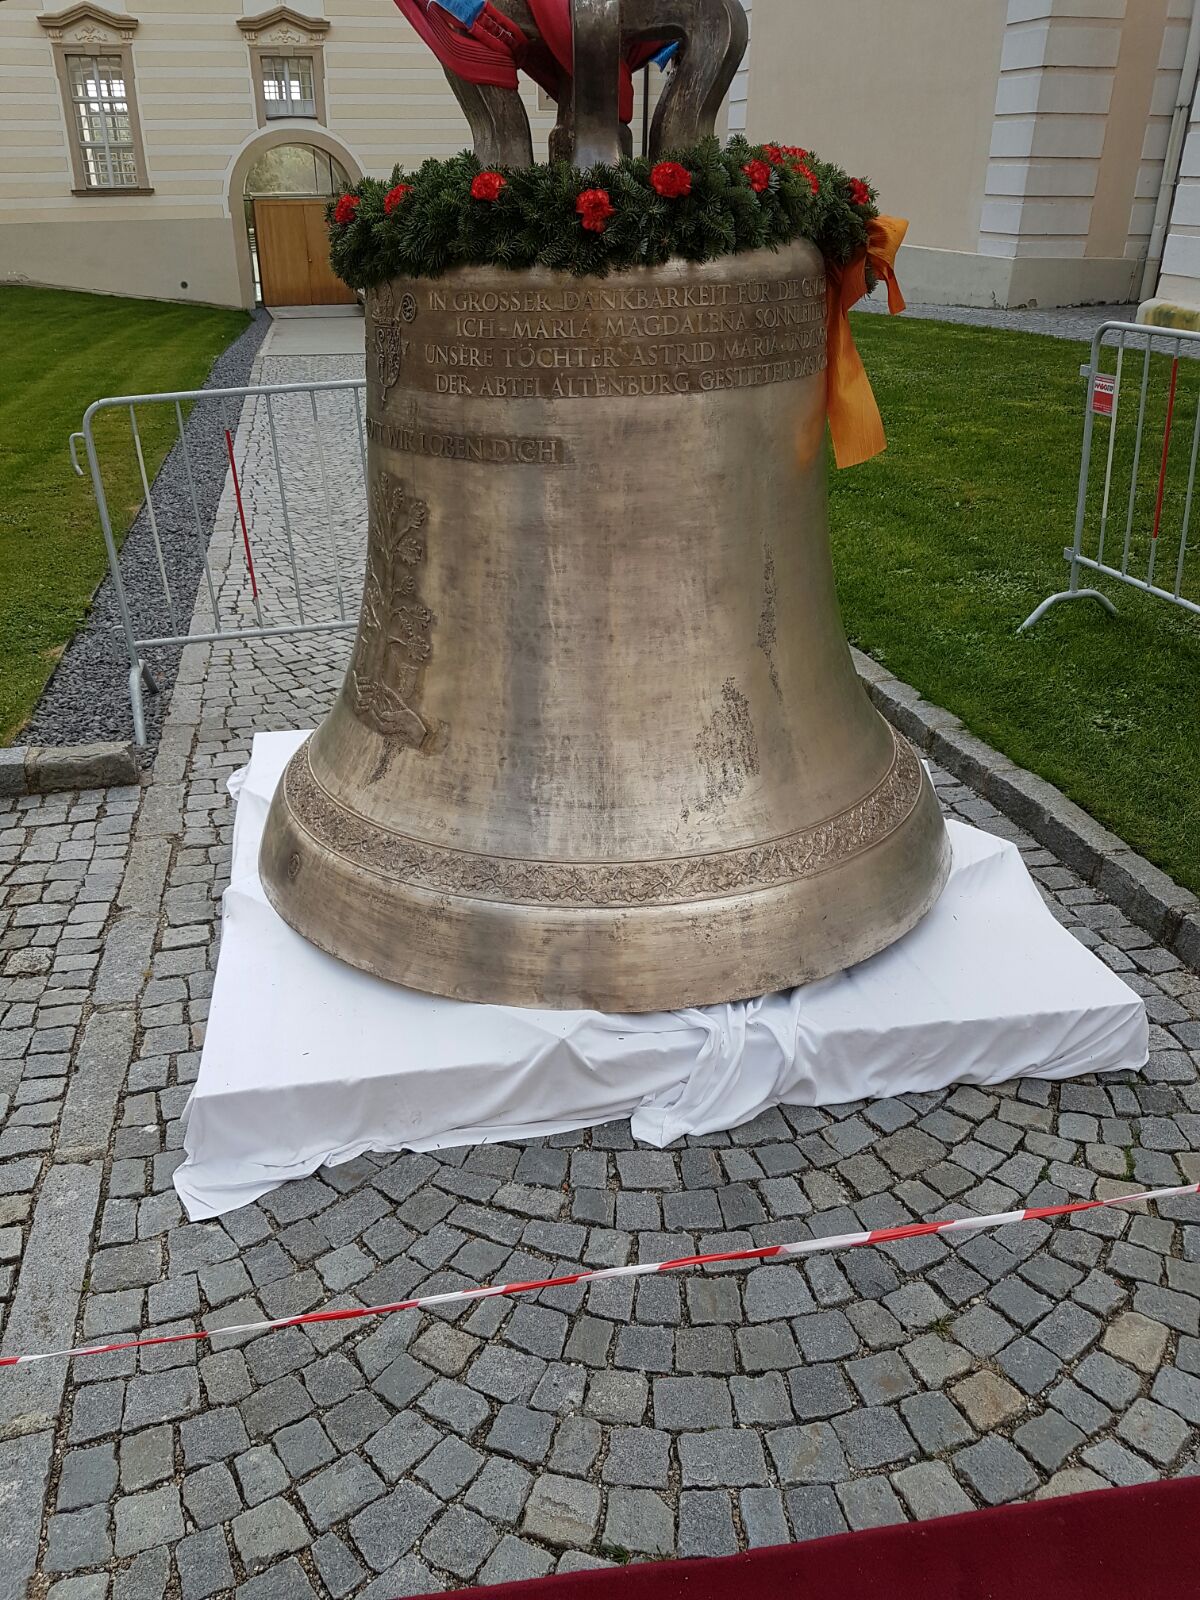 Bell Clapper Inauguration at Stift Altenburg